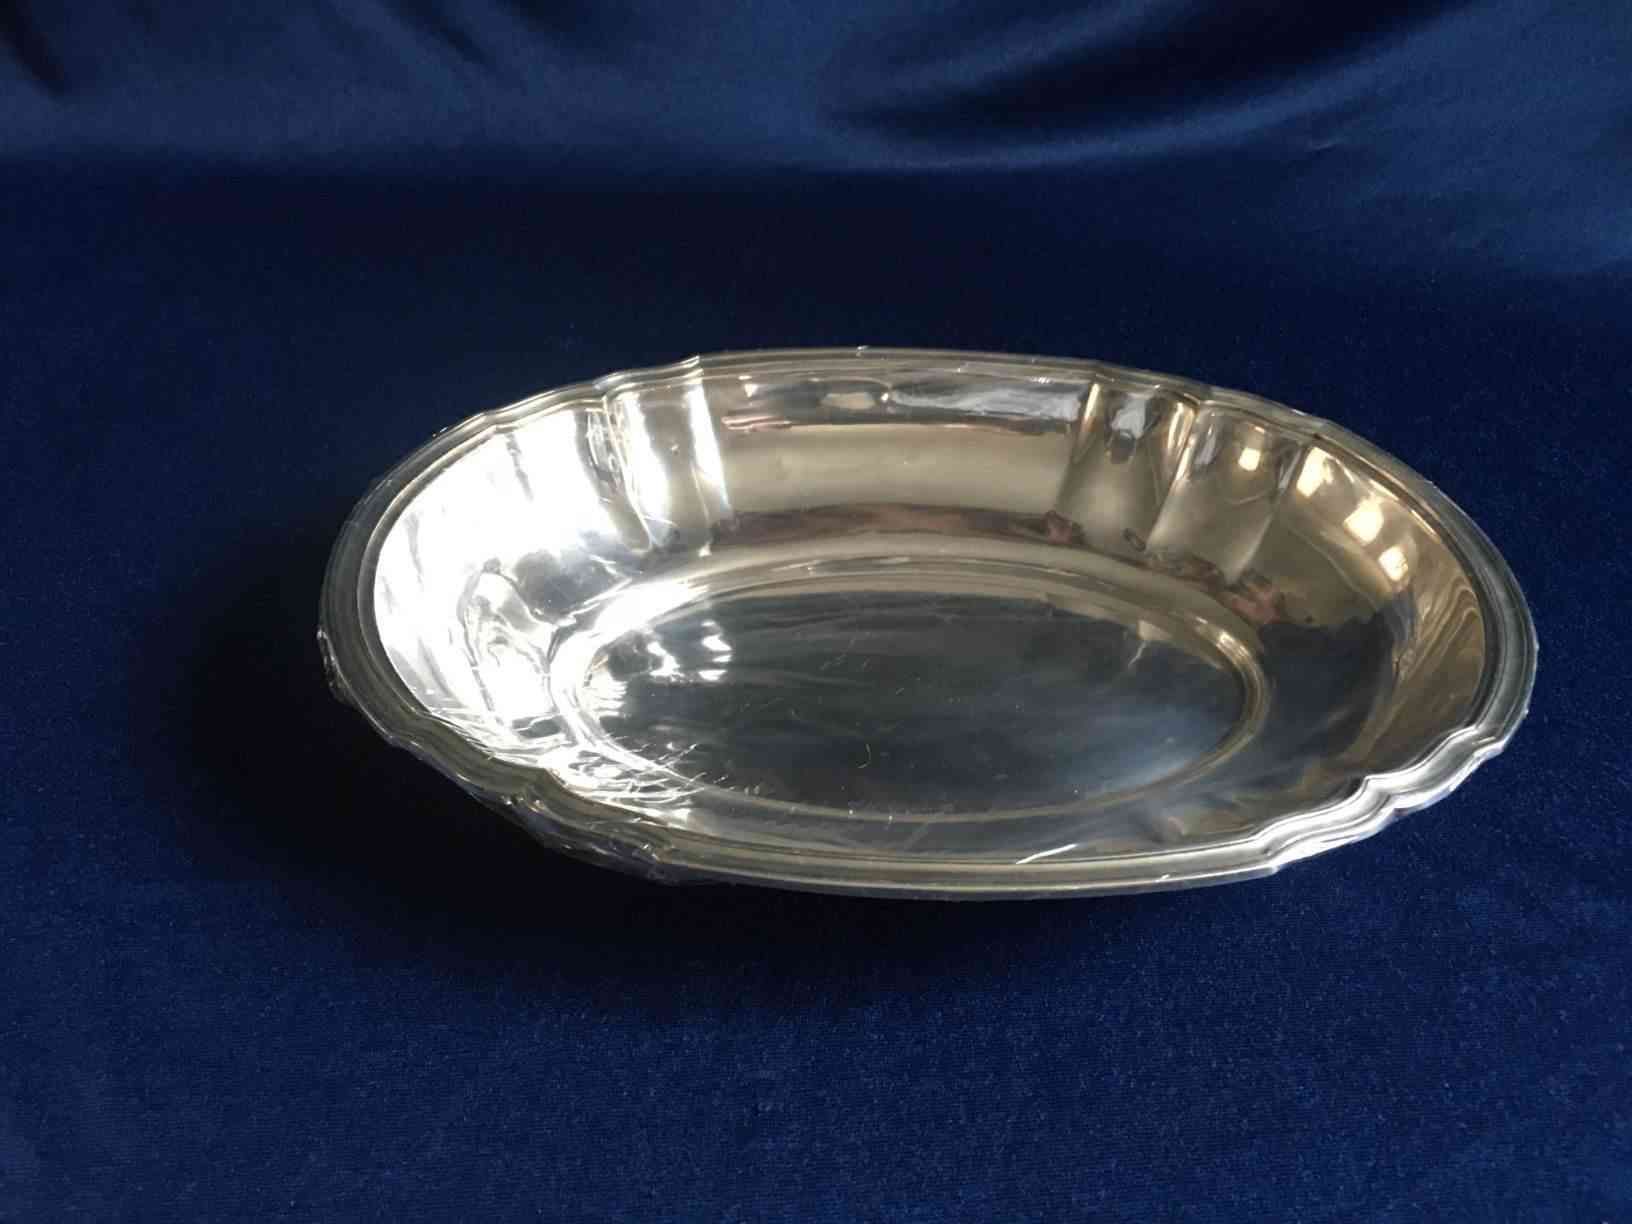 Ovalt sølvfad med lav kant 29,5 x 21,5 cm, (835) sølv fremstillet af udenlandsk mester "D", i flot stand. Pris: 3.500,- Kr.